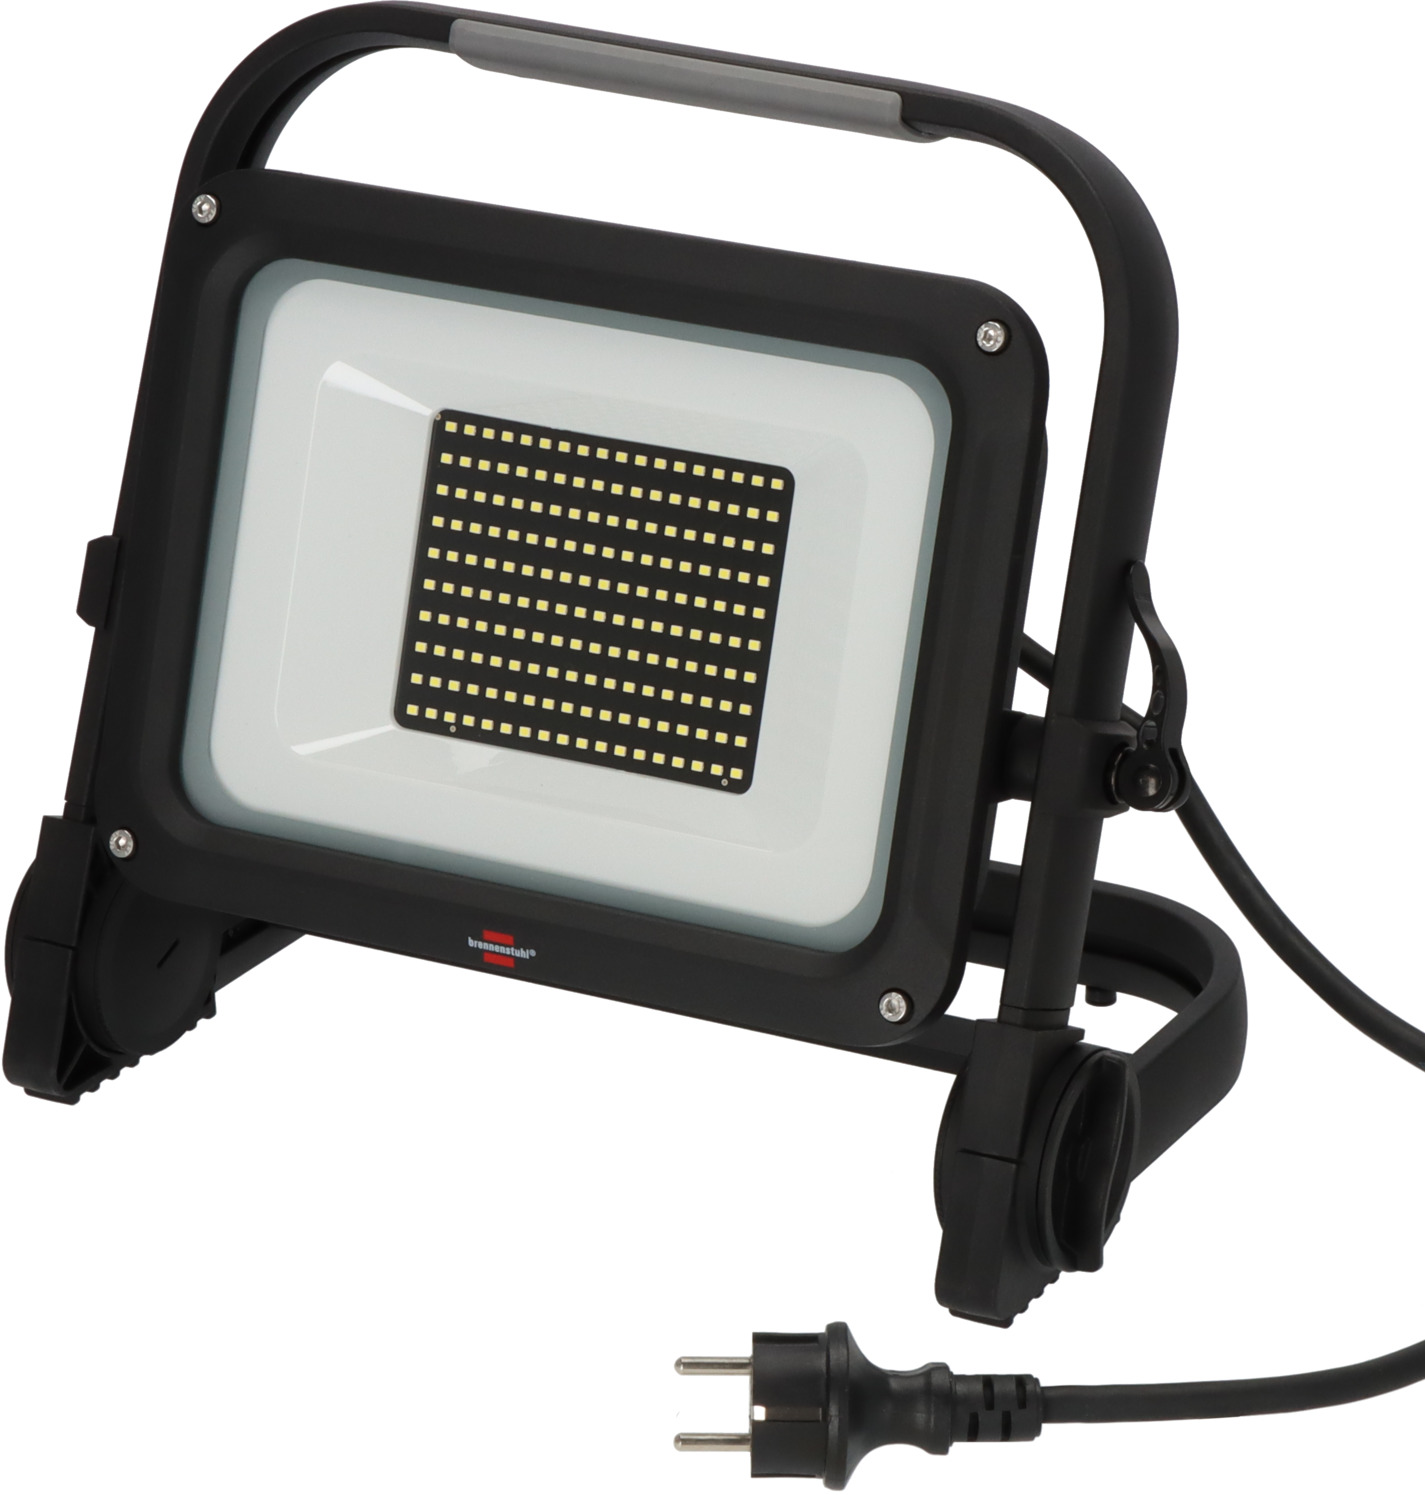 Projecteur LED extérieur LEDVANCE SMART+ MULTICOLOR 30W